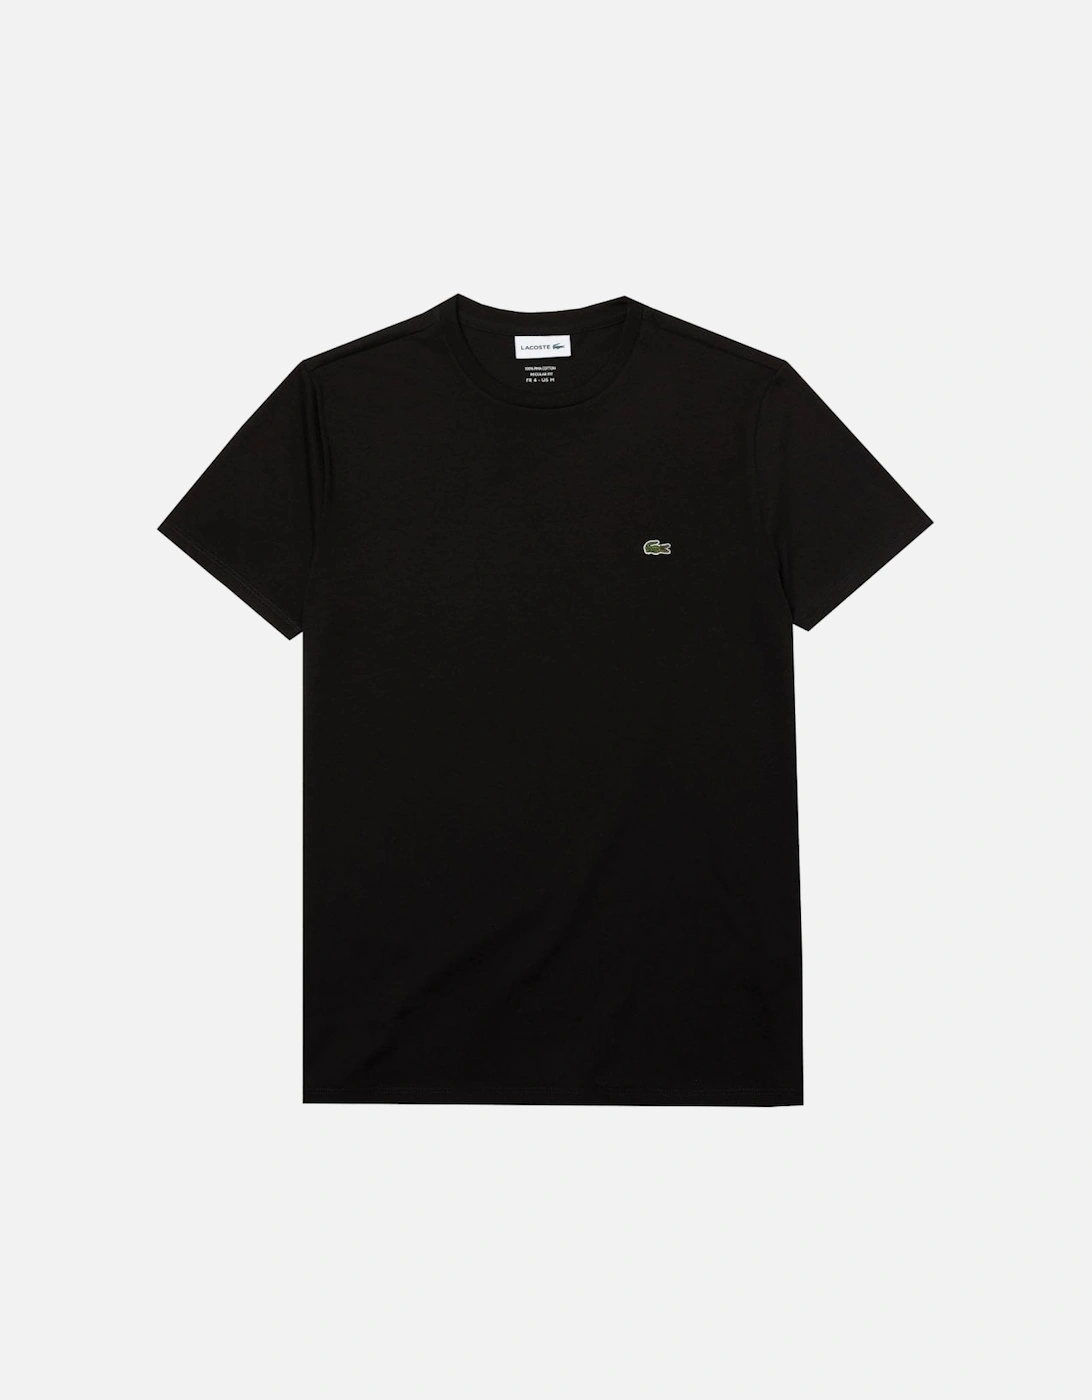 Men's Black T-shirt, 3 of 2